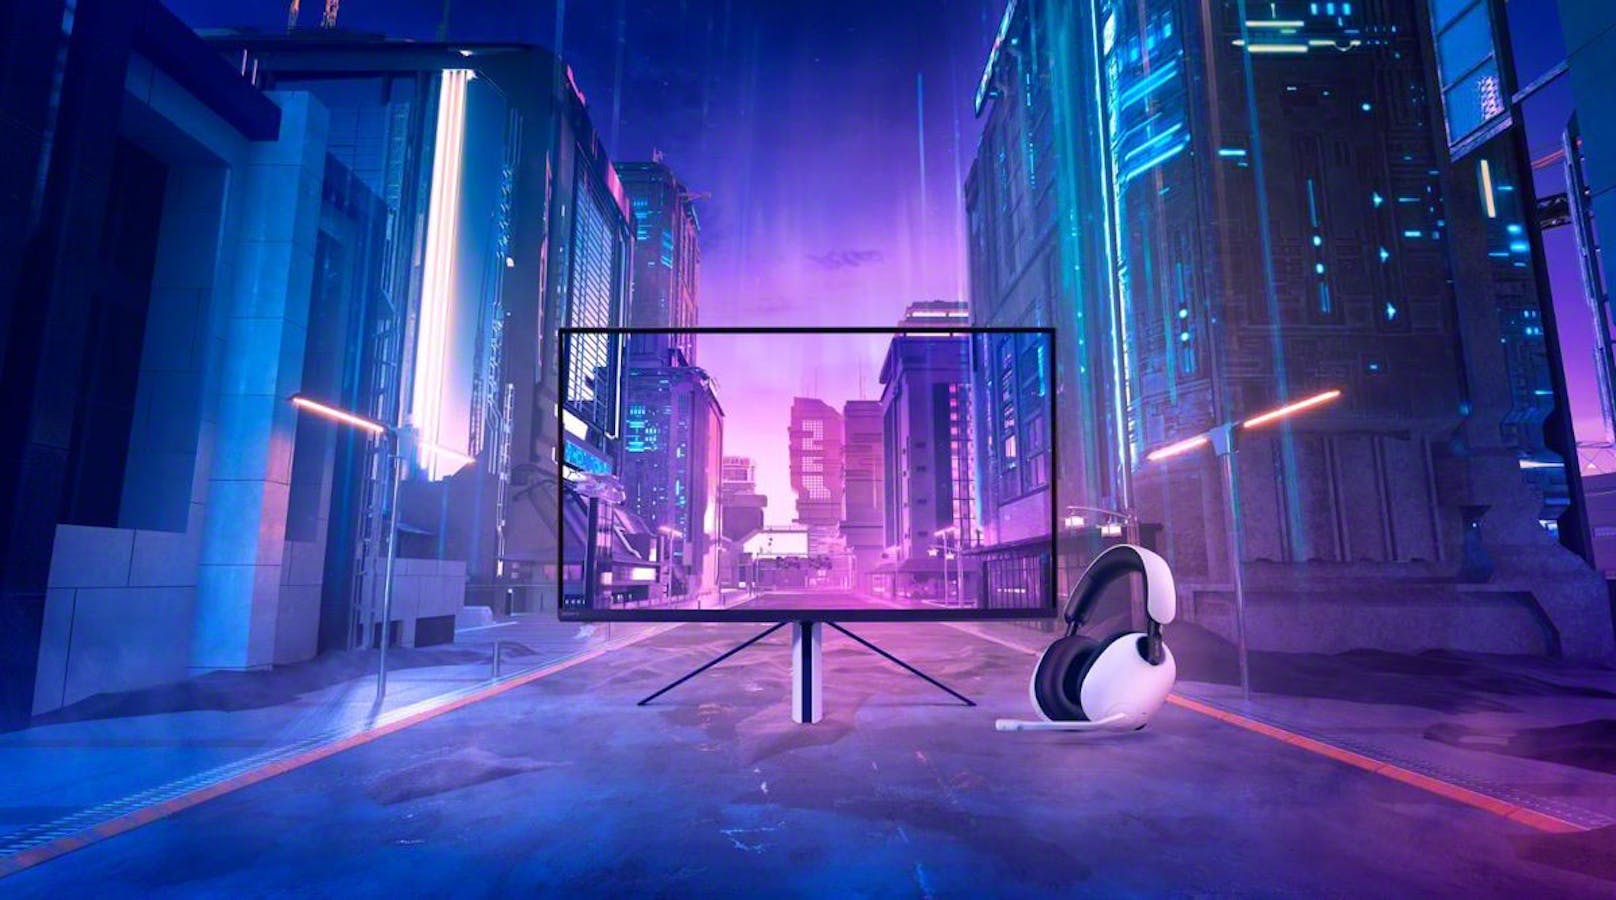 Sony präsentiert mit "Inzone" eine neue PC-Gaming-Marke mit speziellen Monitoren und Headsets.